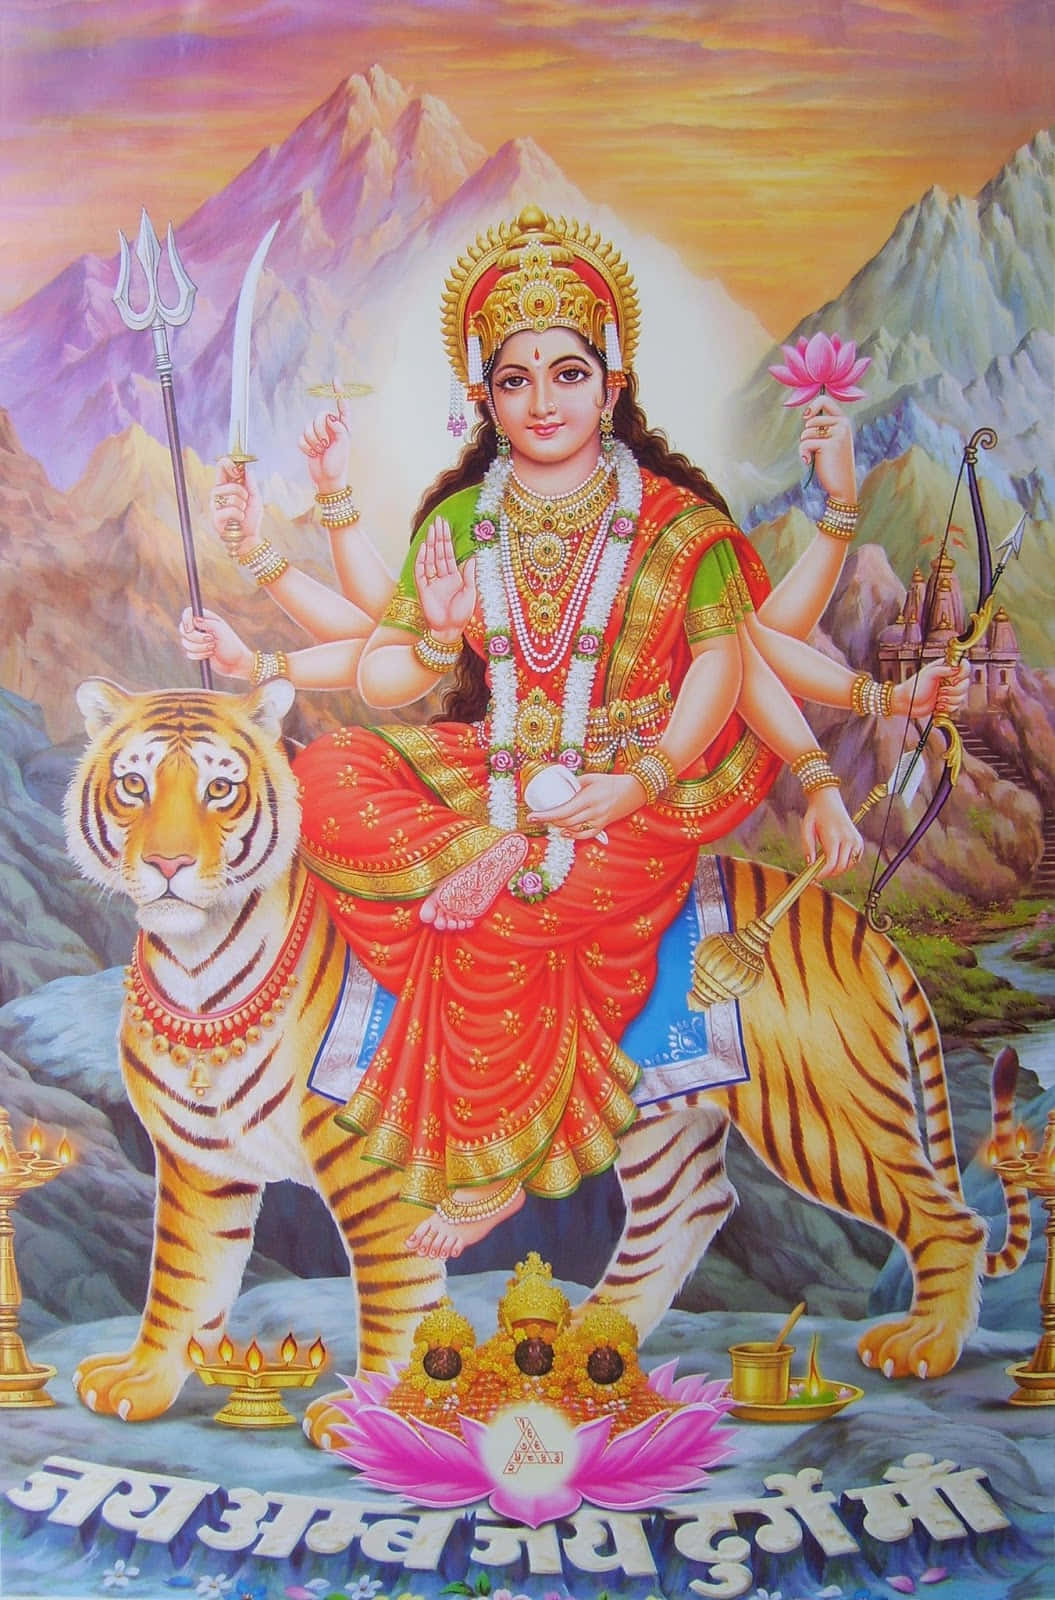 Imagende La Diosa Hindú Durga